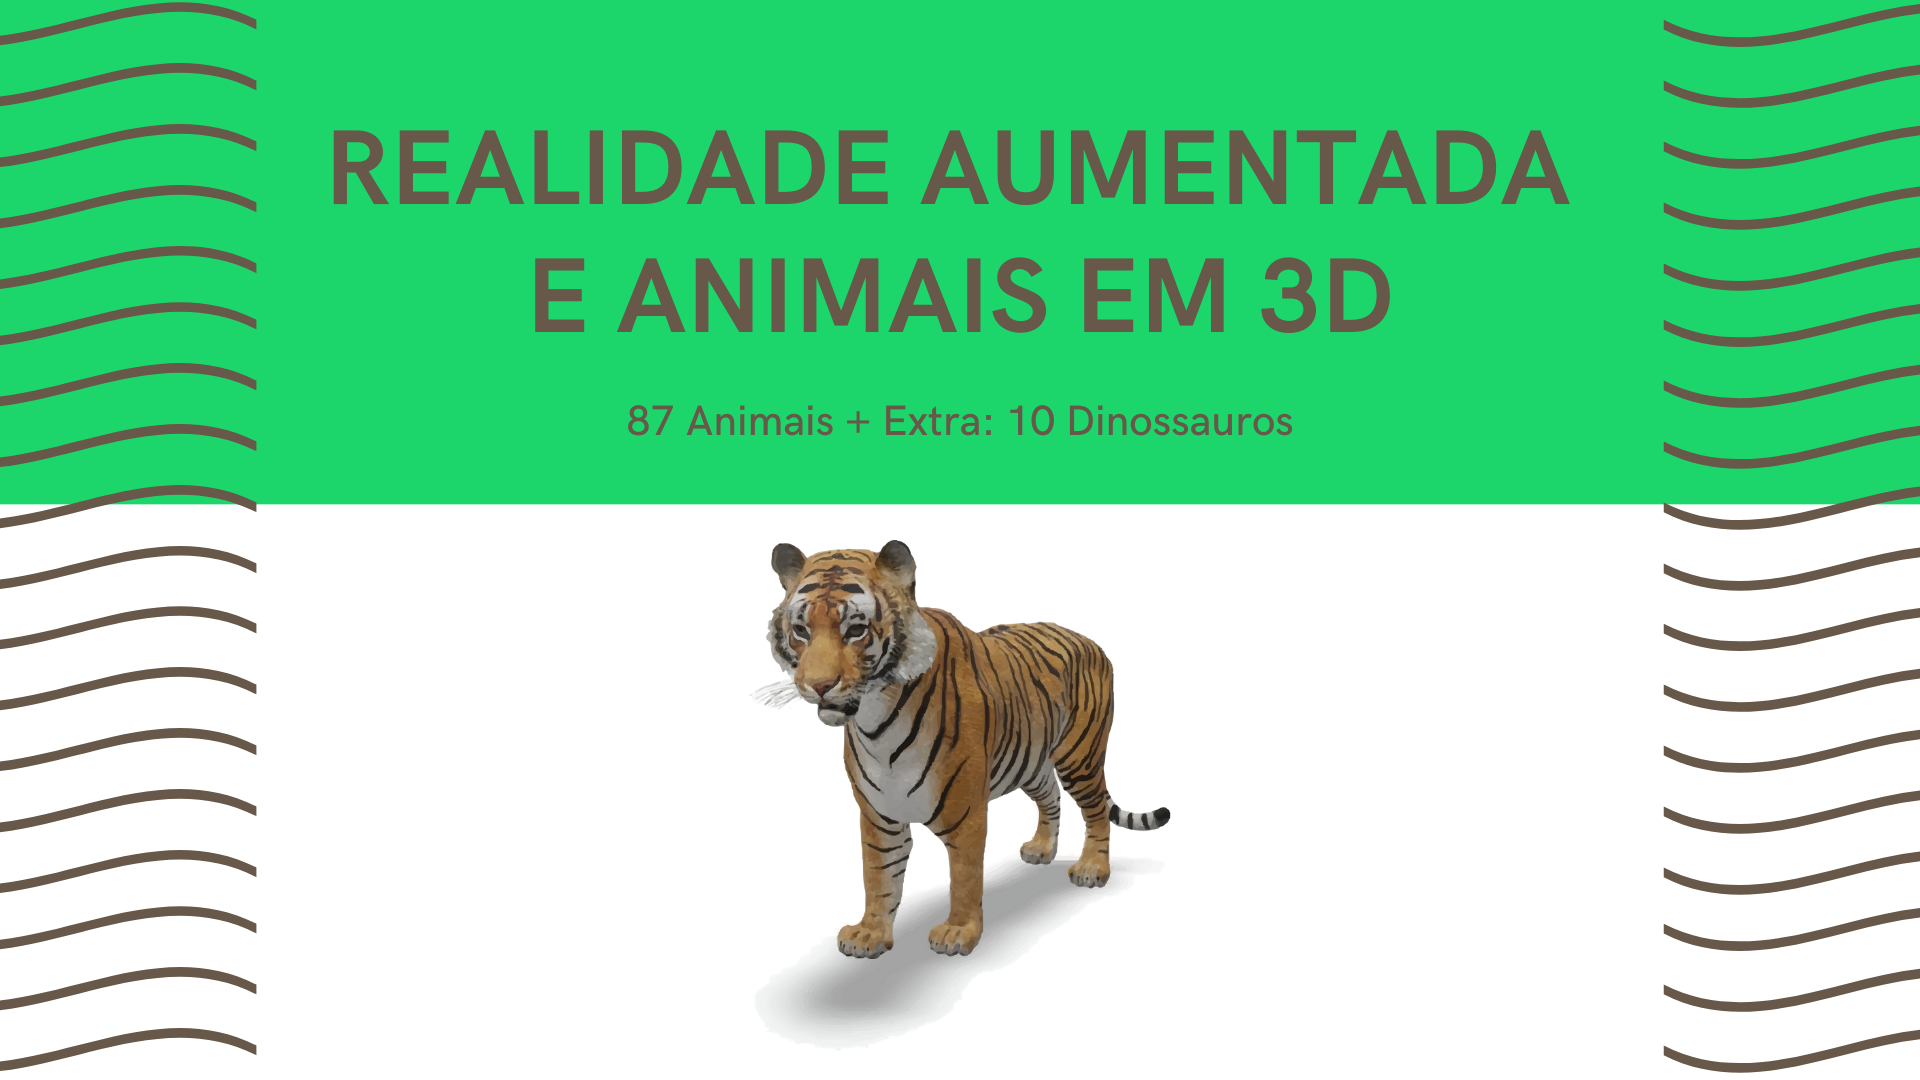 ANIMAIS EM 3D REALIDADE AUMENTADA, GRÁTIS